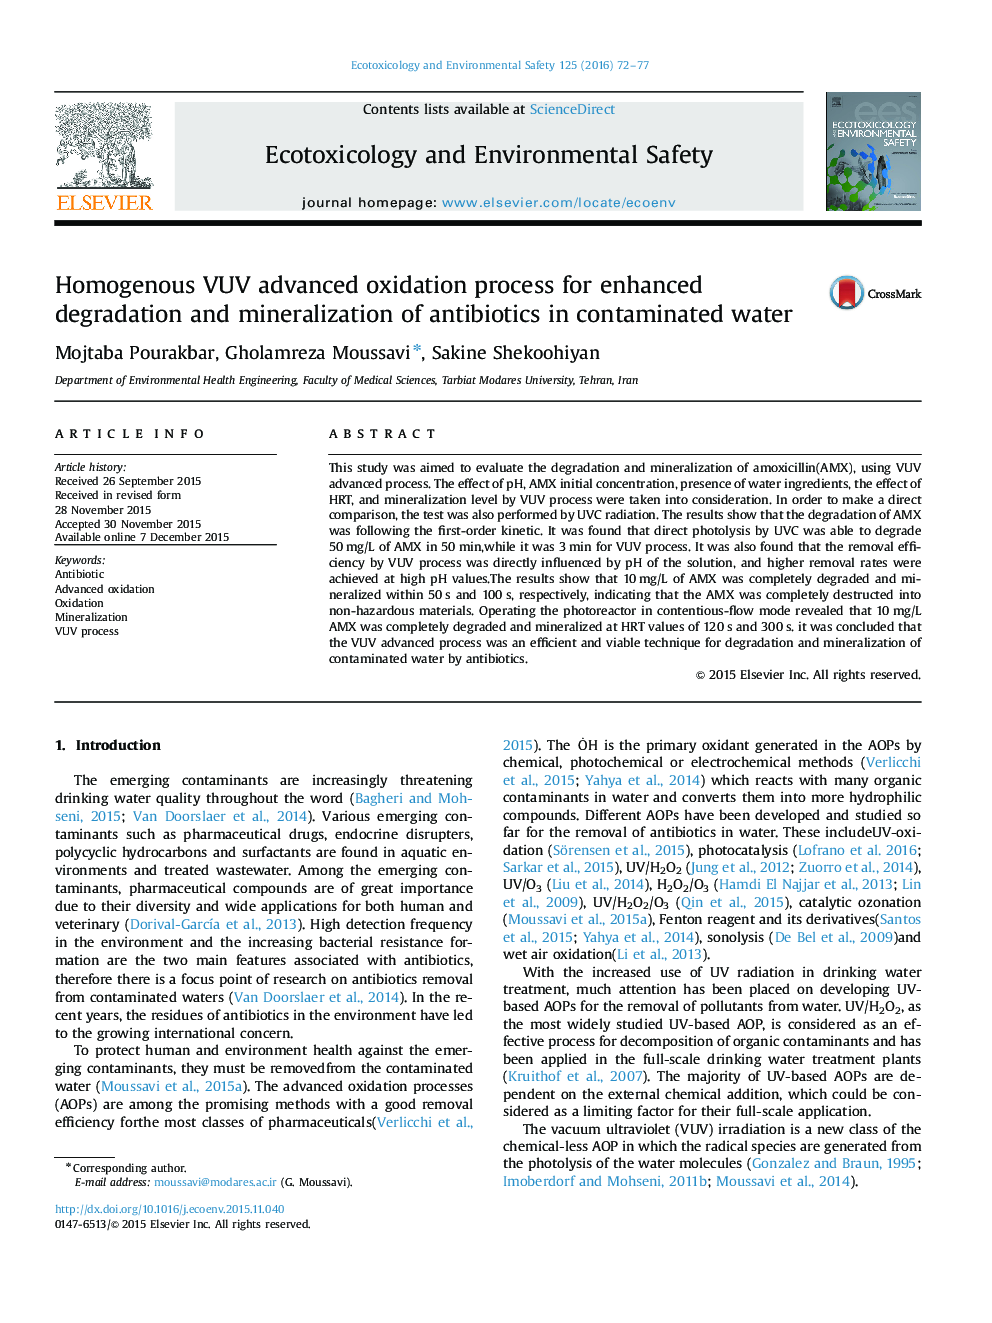 فرآیند اکسیداسیون پیشرفته VUV همگن برای تخریب و کانی سازی آنتی بیوتیک ها در آب آلوده